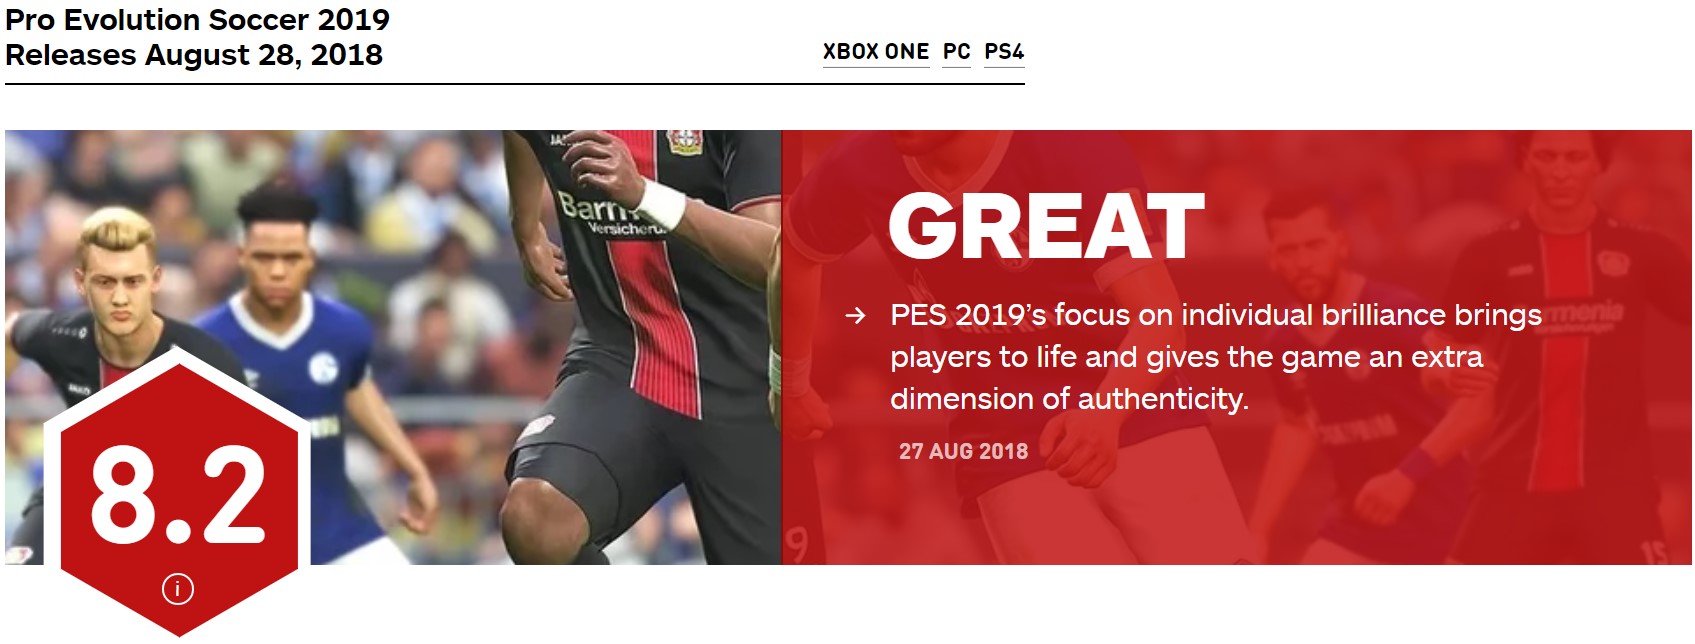 《實況足球2019》IGN 8.2分 系列以來最真實一作